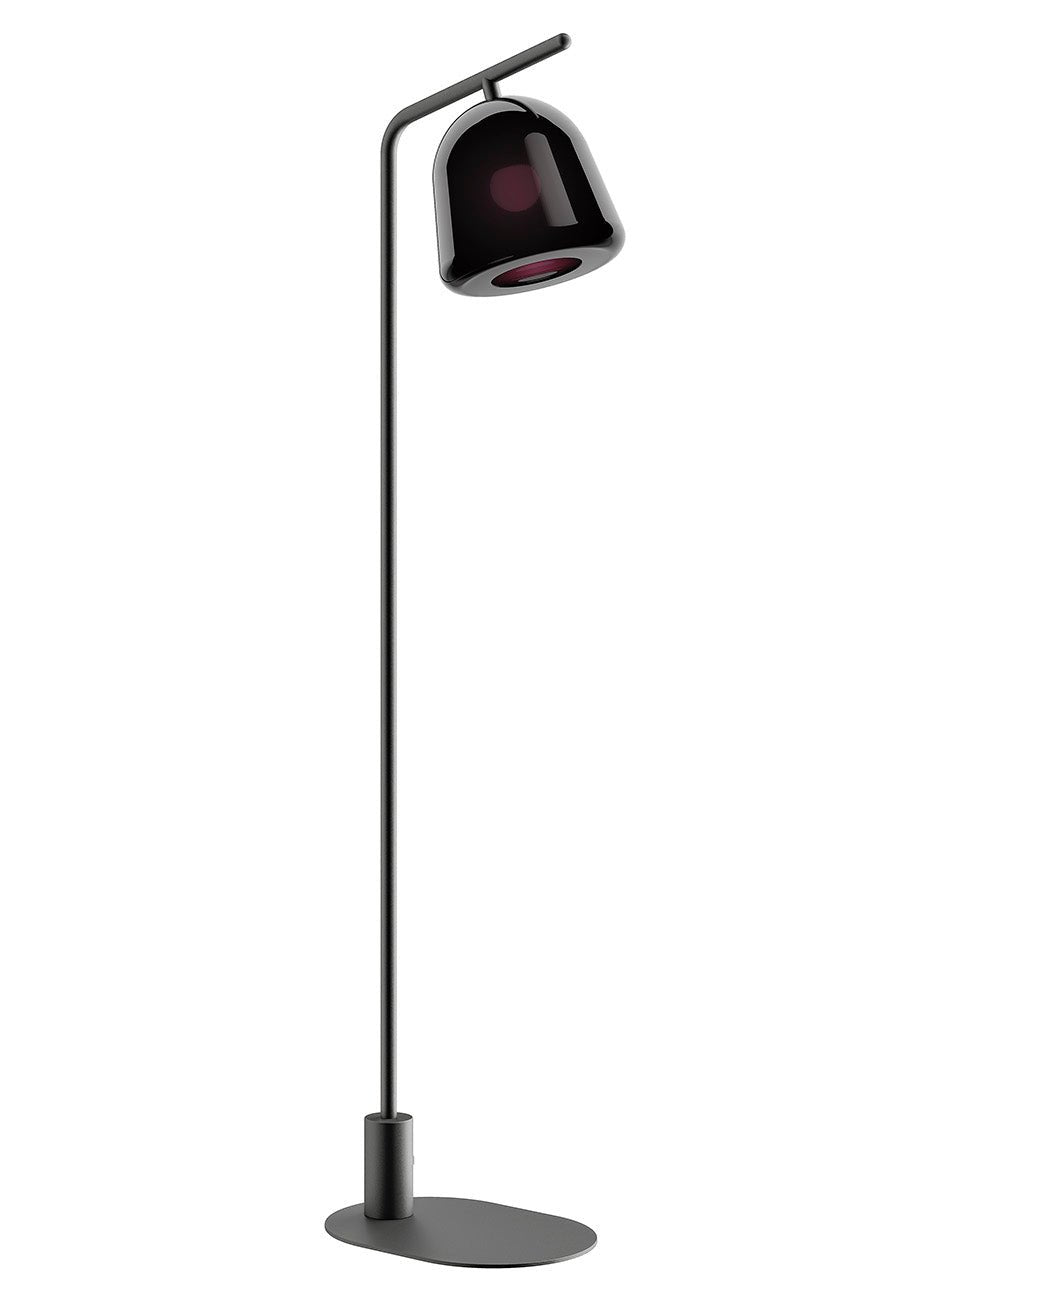 Artinox - Polo Vloerlamp zwart